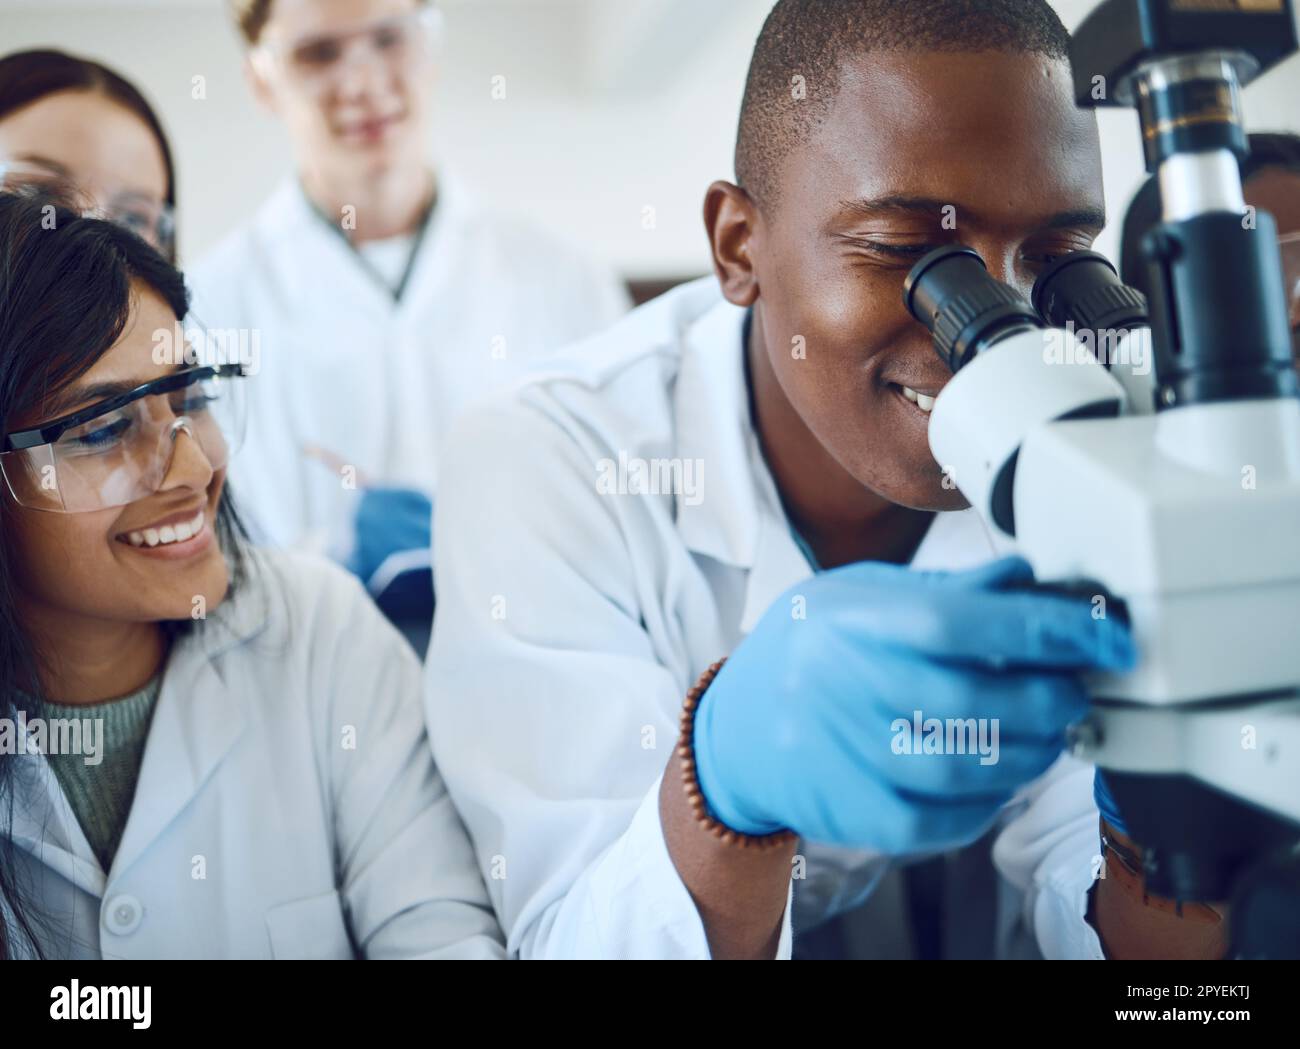 Microscope, science et équipe scientifique avec test d'étude pour la recherche, l'innovation médicale et la biotechnologie dans les soins de santé. Étudiants en pharmacie dans un laboratoire travaillant sur des bactéries ou des résultats d'adn Banque D'Images